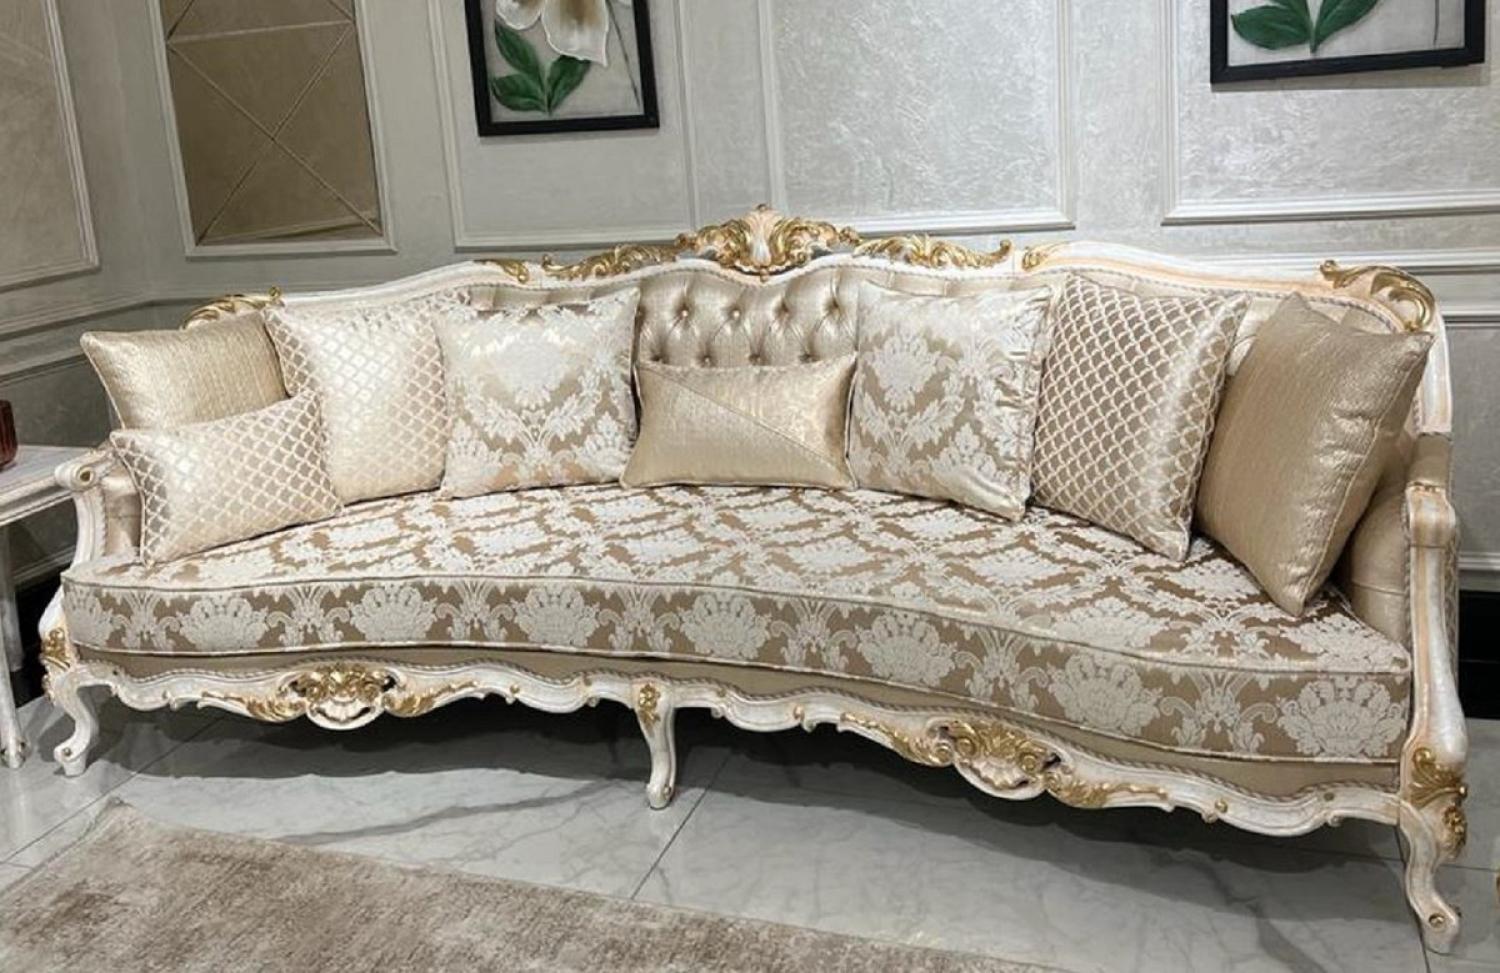 Casa Padrino Luxus Barock Sofa Gold / Weiß / Gold - Handgefertigtes Wohnzimmer Sofa mit elegantem Muster und dekorativen Kissen - Wohnzimmer Möbel im Barockstil Bild 1